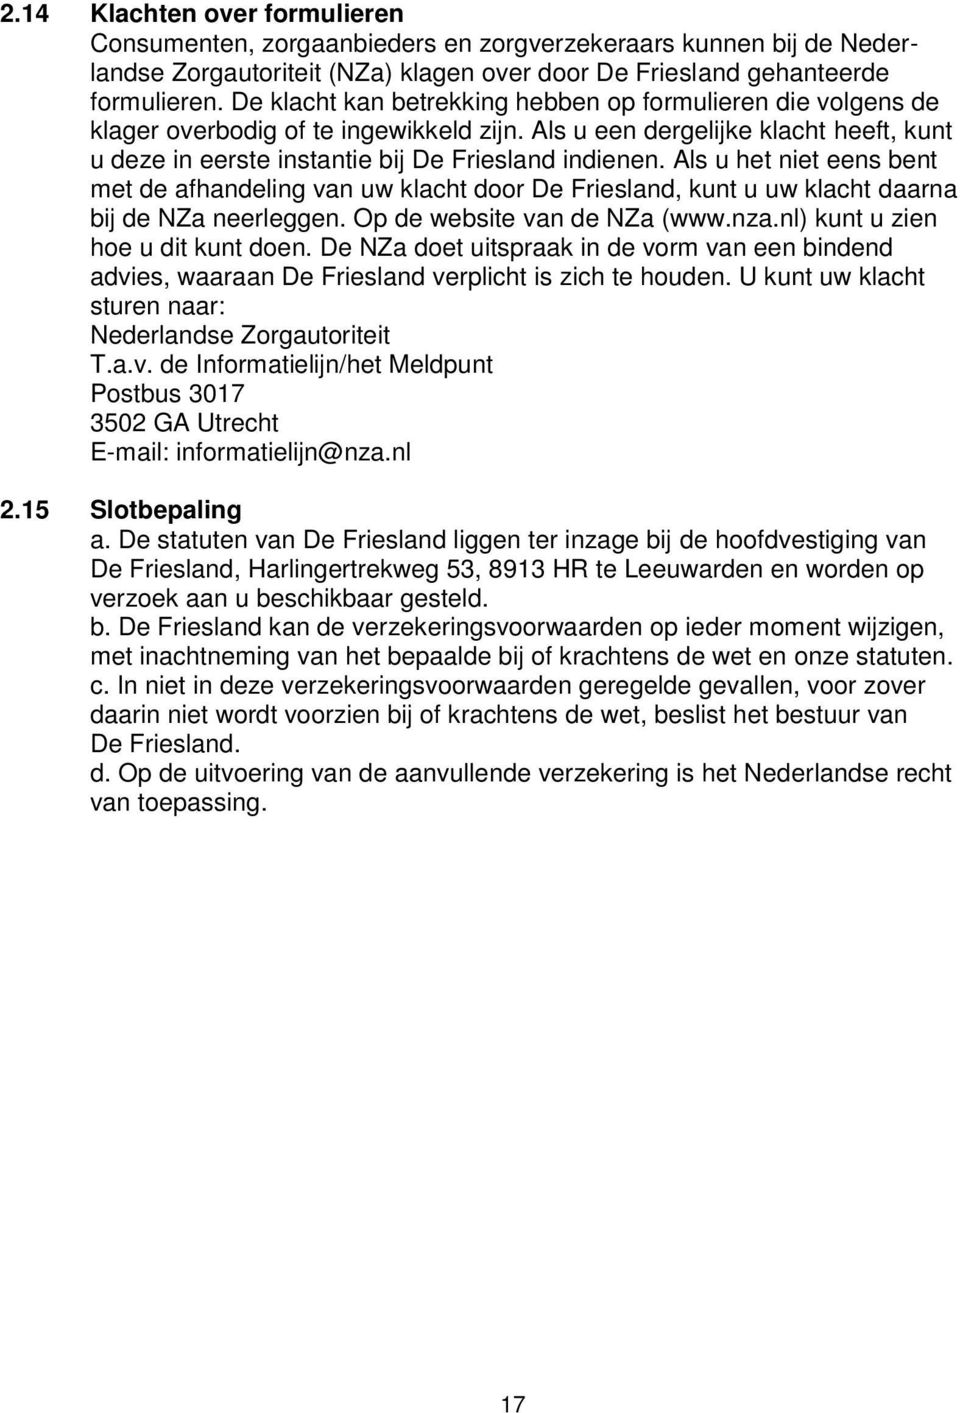 Als u het niet eens bent met de afhandeling van uw klacht door De Friesland, kunt u uw klacht daarna bij de NZa neerleggen. Op de website van de NZa (www.nza.nl) kunt u zien hoe u dit kunt doen.